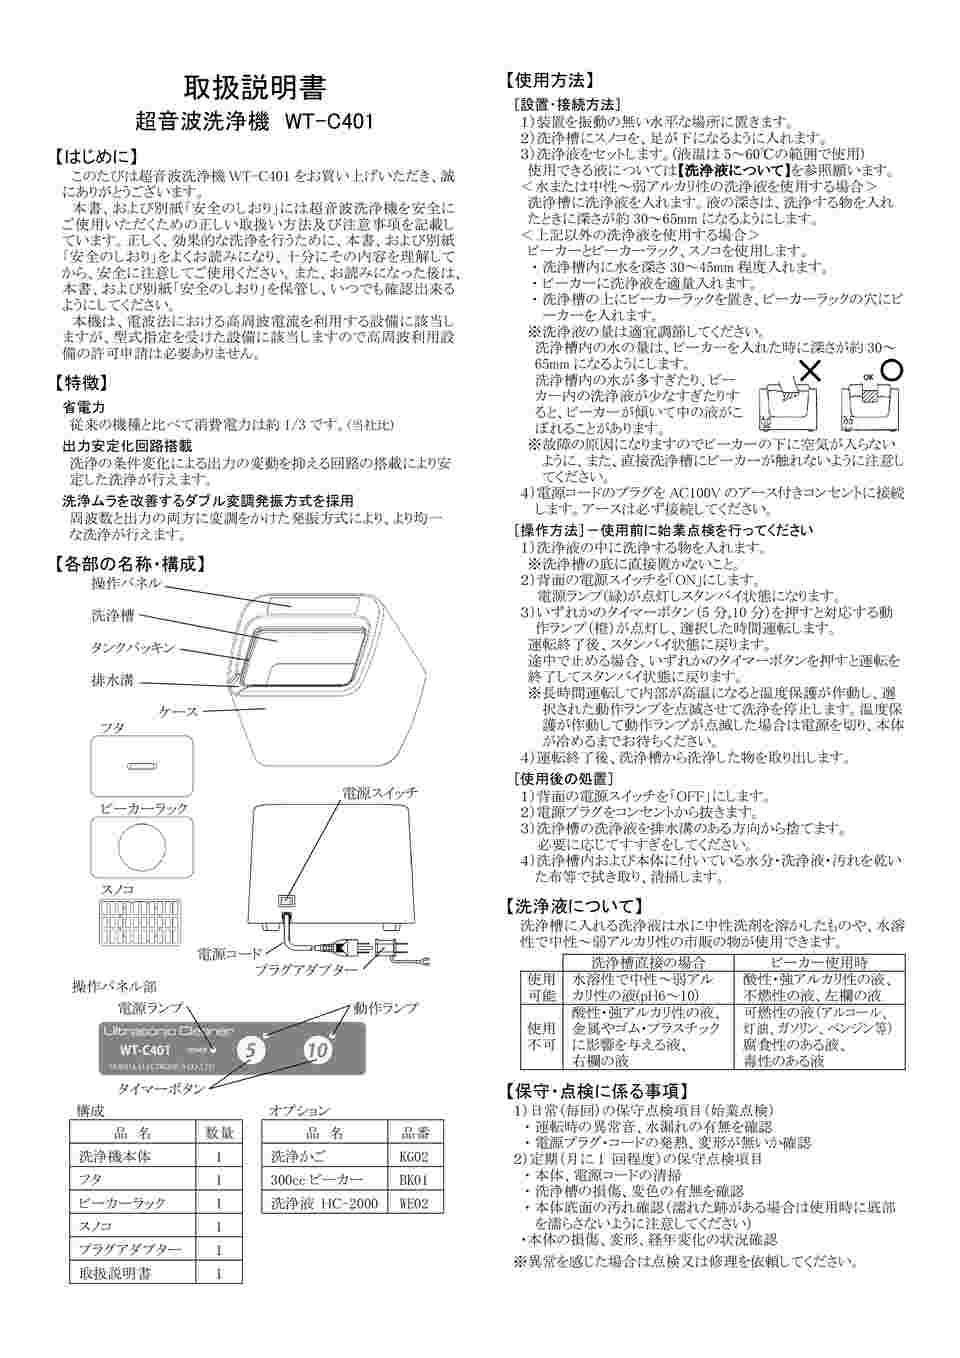 63-4171-14 卓上型超音波洗浄機 WT-C401 【AXEL】 アズワン